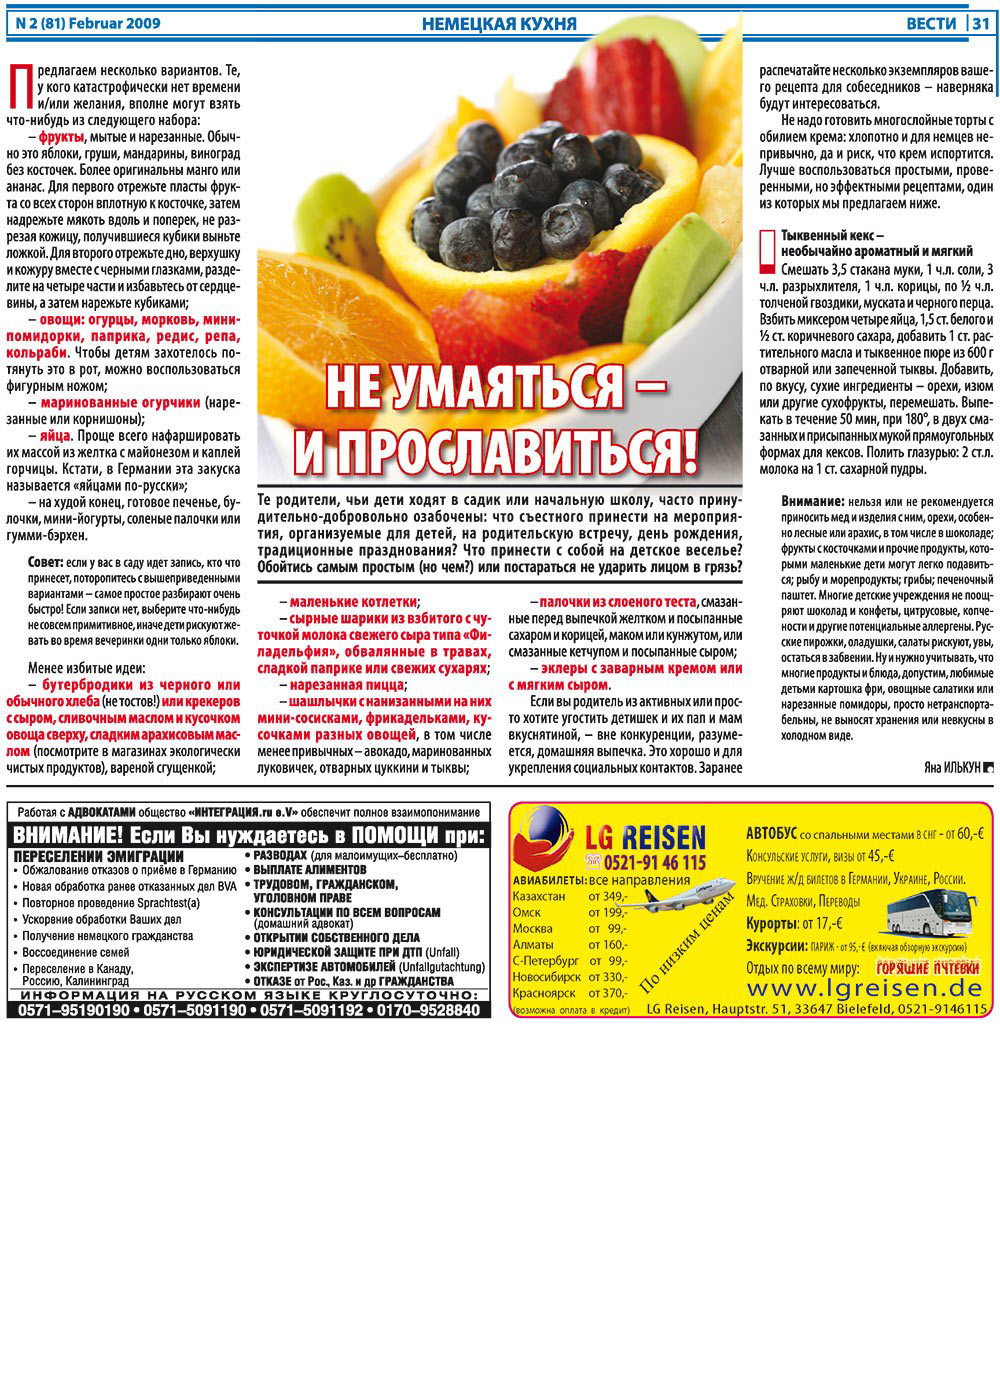 Вести, газета. 2009 №2 стр.31